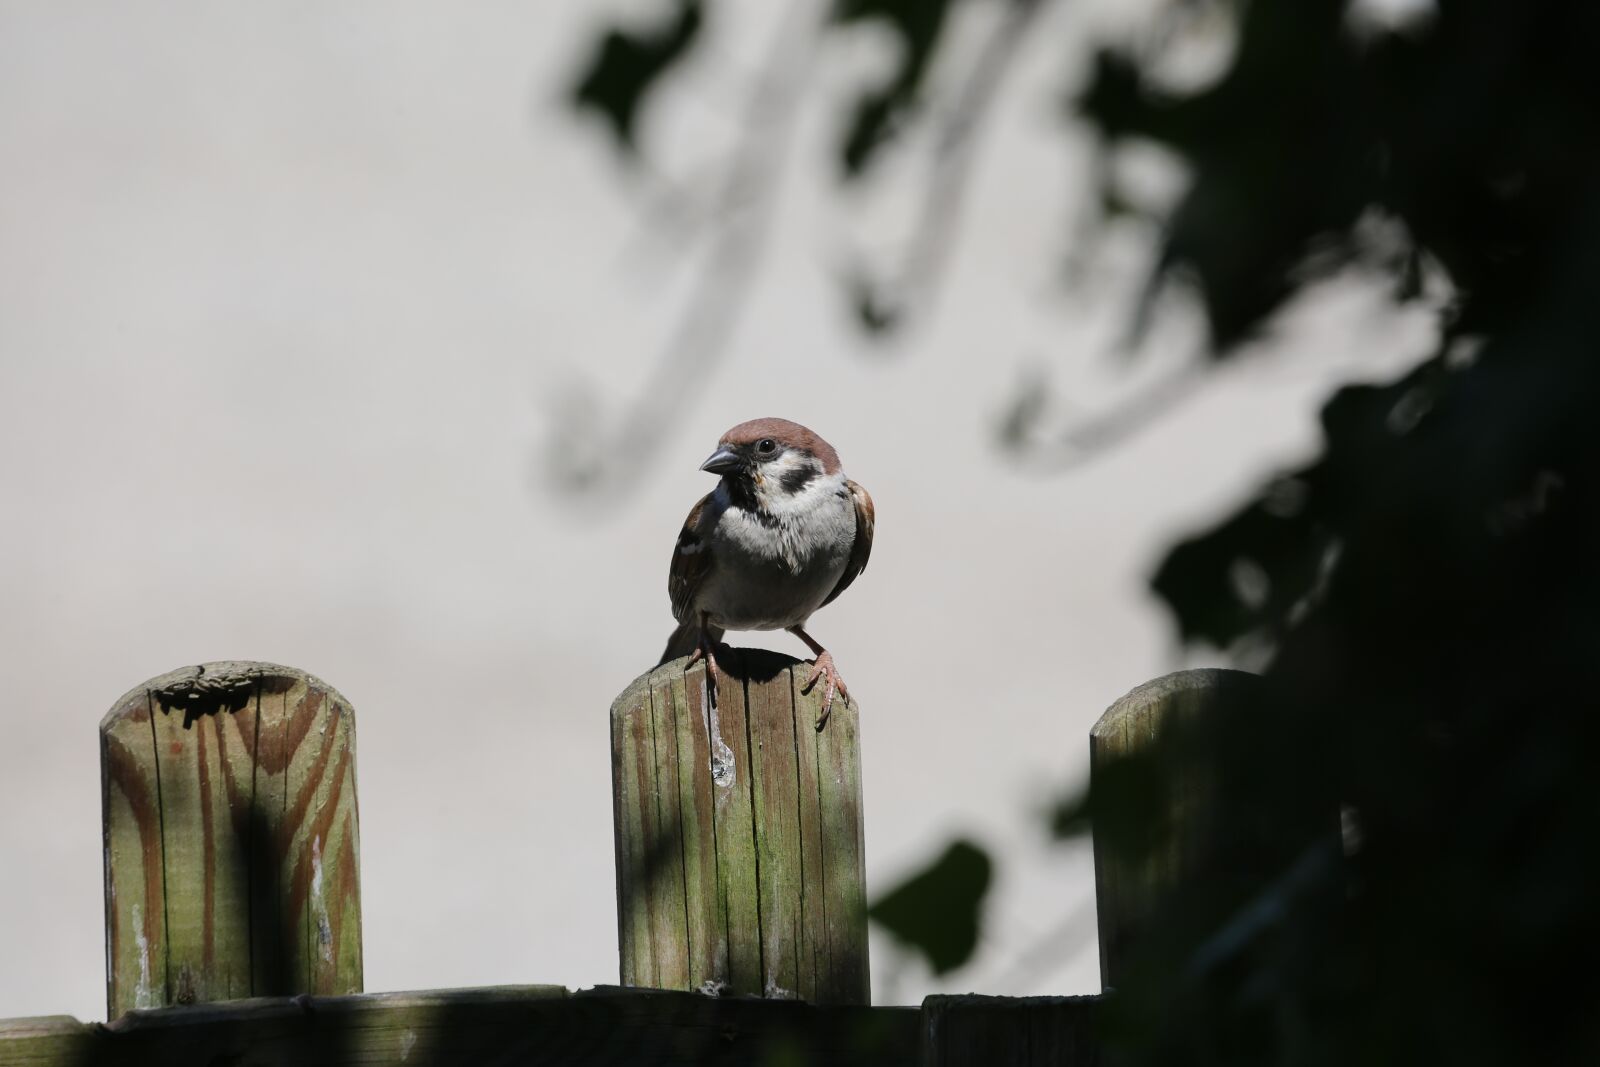 Canon EOS 5D Mark III sample photo. Sparrow, bird, nature photography